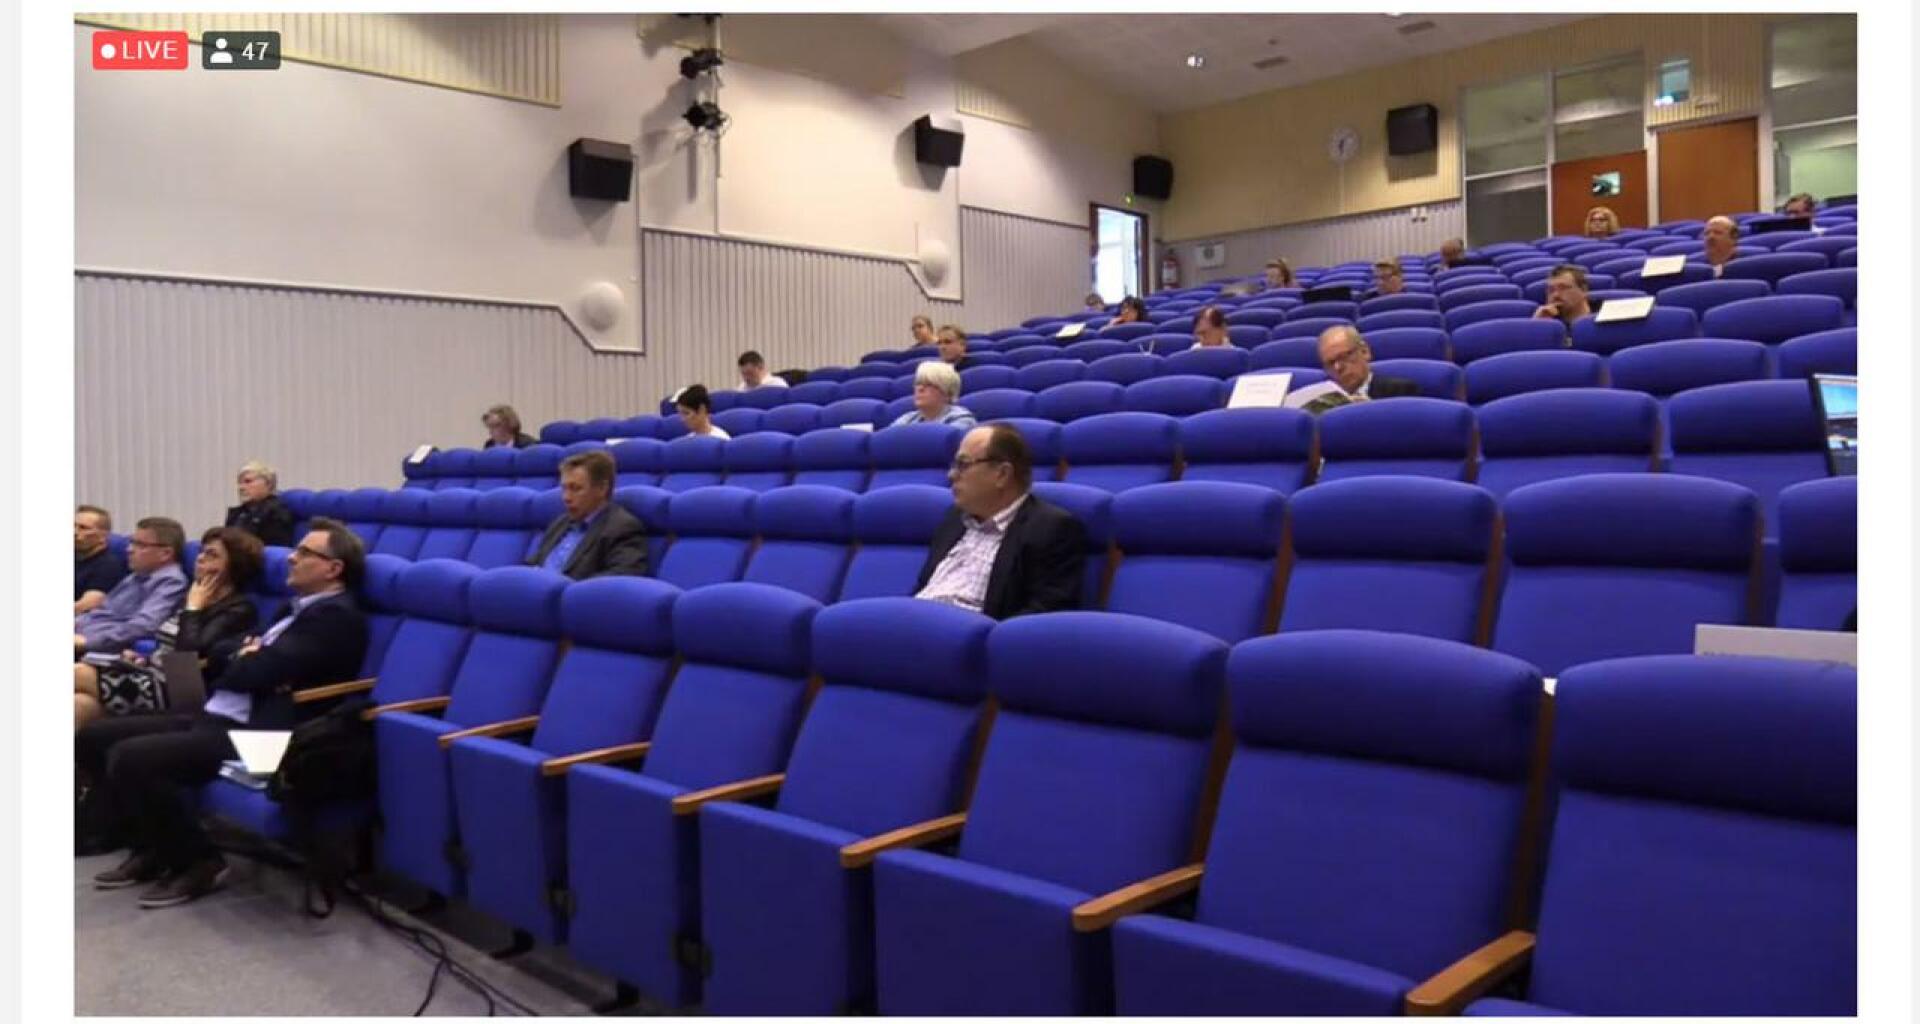 Valtuutetut istuivat ReijoWaara-salissa joka toisella rivillä aina muutaman penkin välein ja tekninen johtaja Teemu Niemimäki kiikutti rivien välissä mikrofonia puheenvuorojen pitäjille.